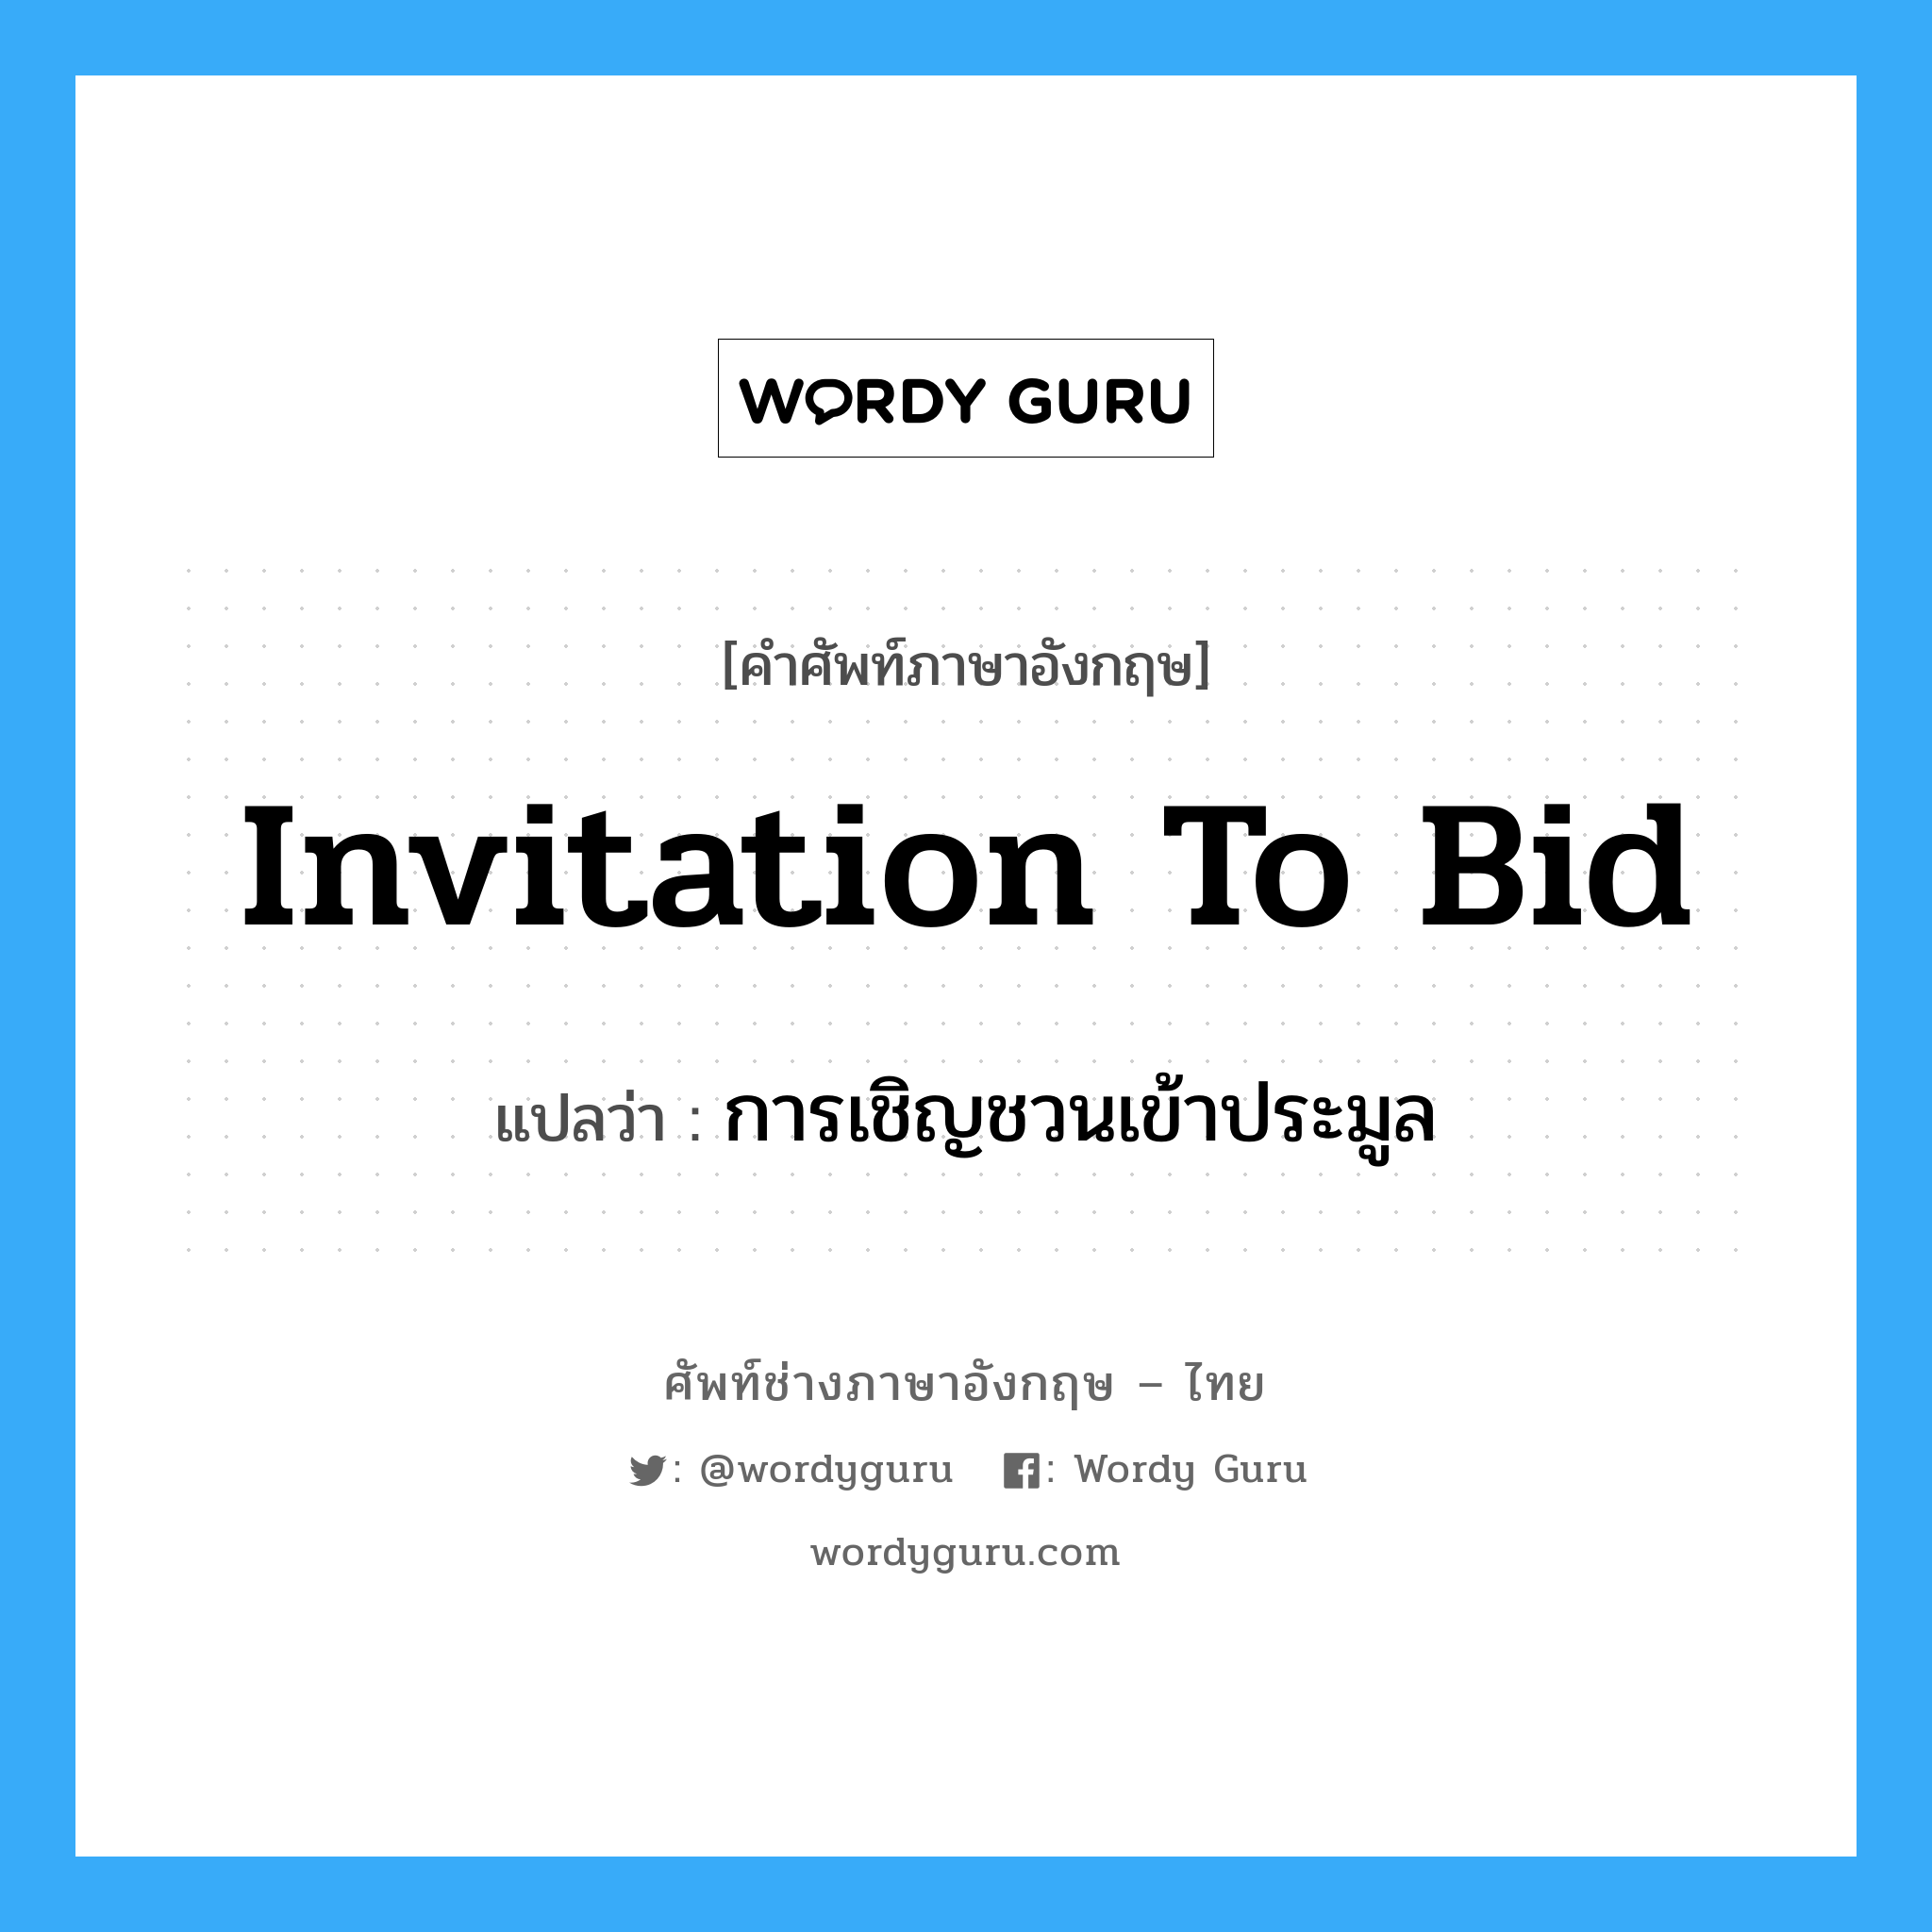 Invitation to Bid แปลว่า?, คำศัพท์ช่างภาษาอังกฤษ - ไทย Invitation to Bid คำศัพท์ภาษาอังกฤษ Invitation to Bid แปลว่า การเชิญชวนเข้าประมูล